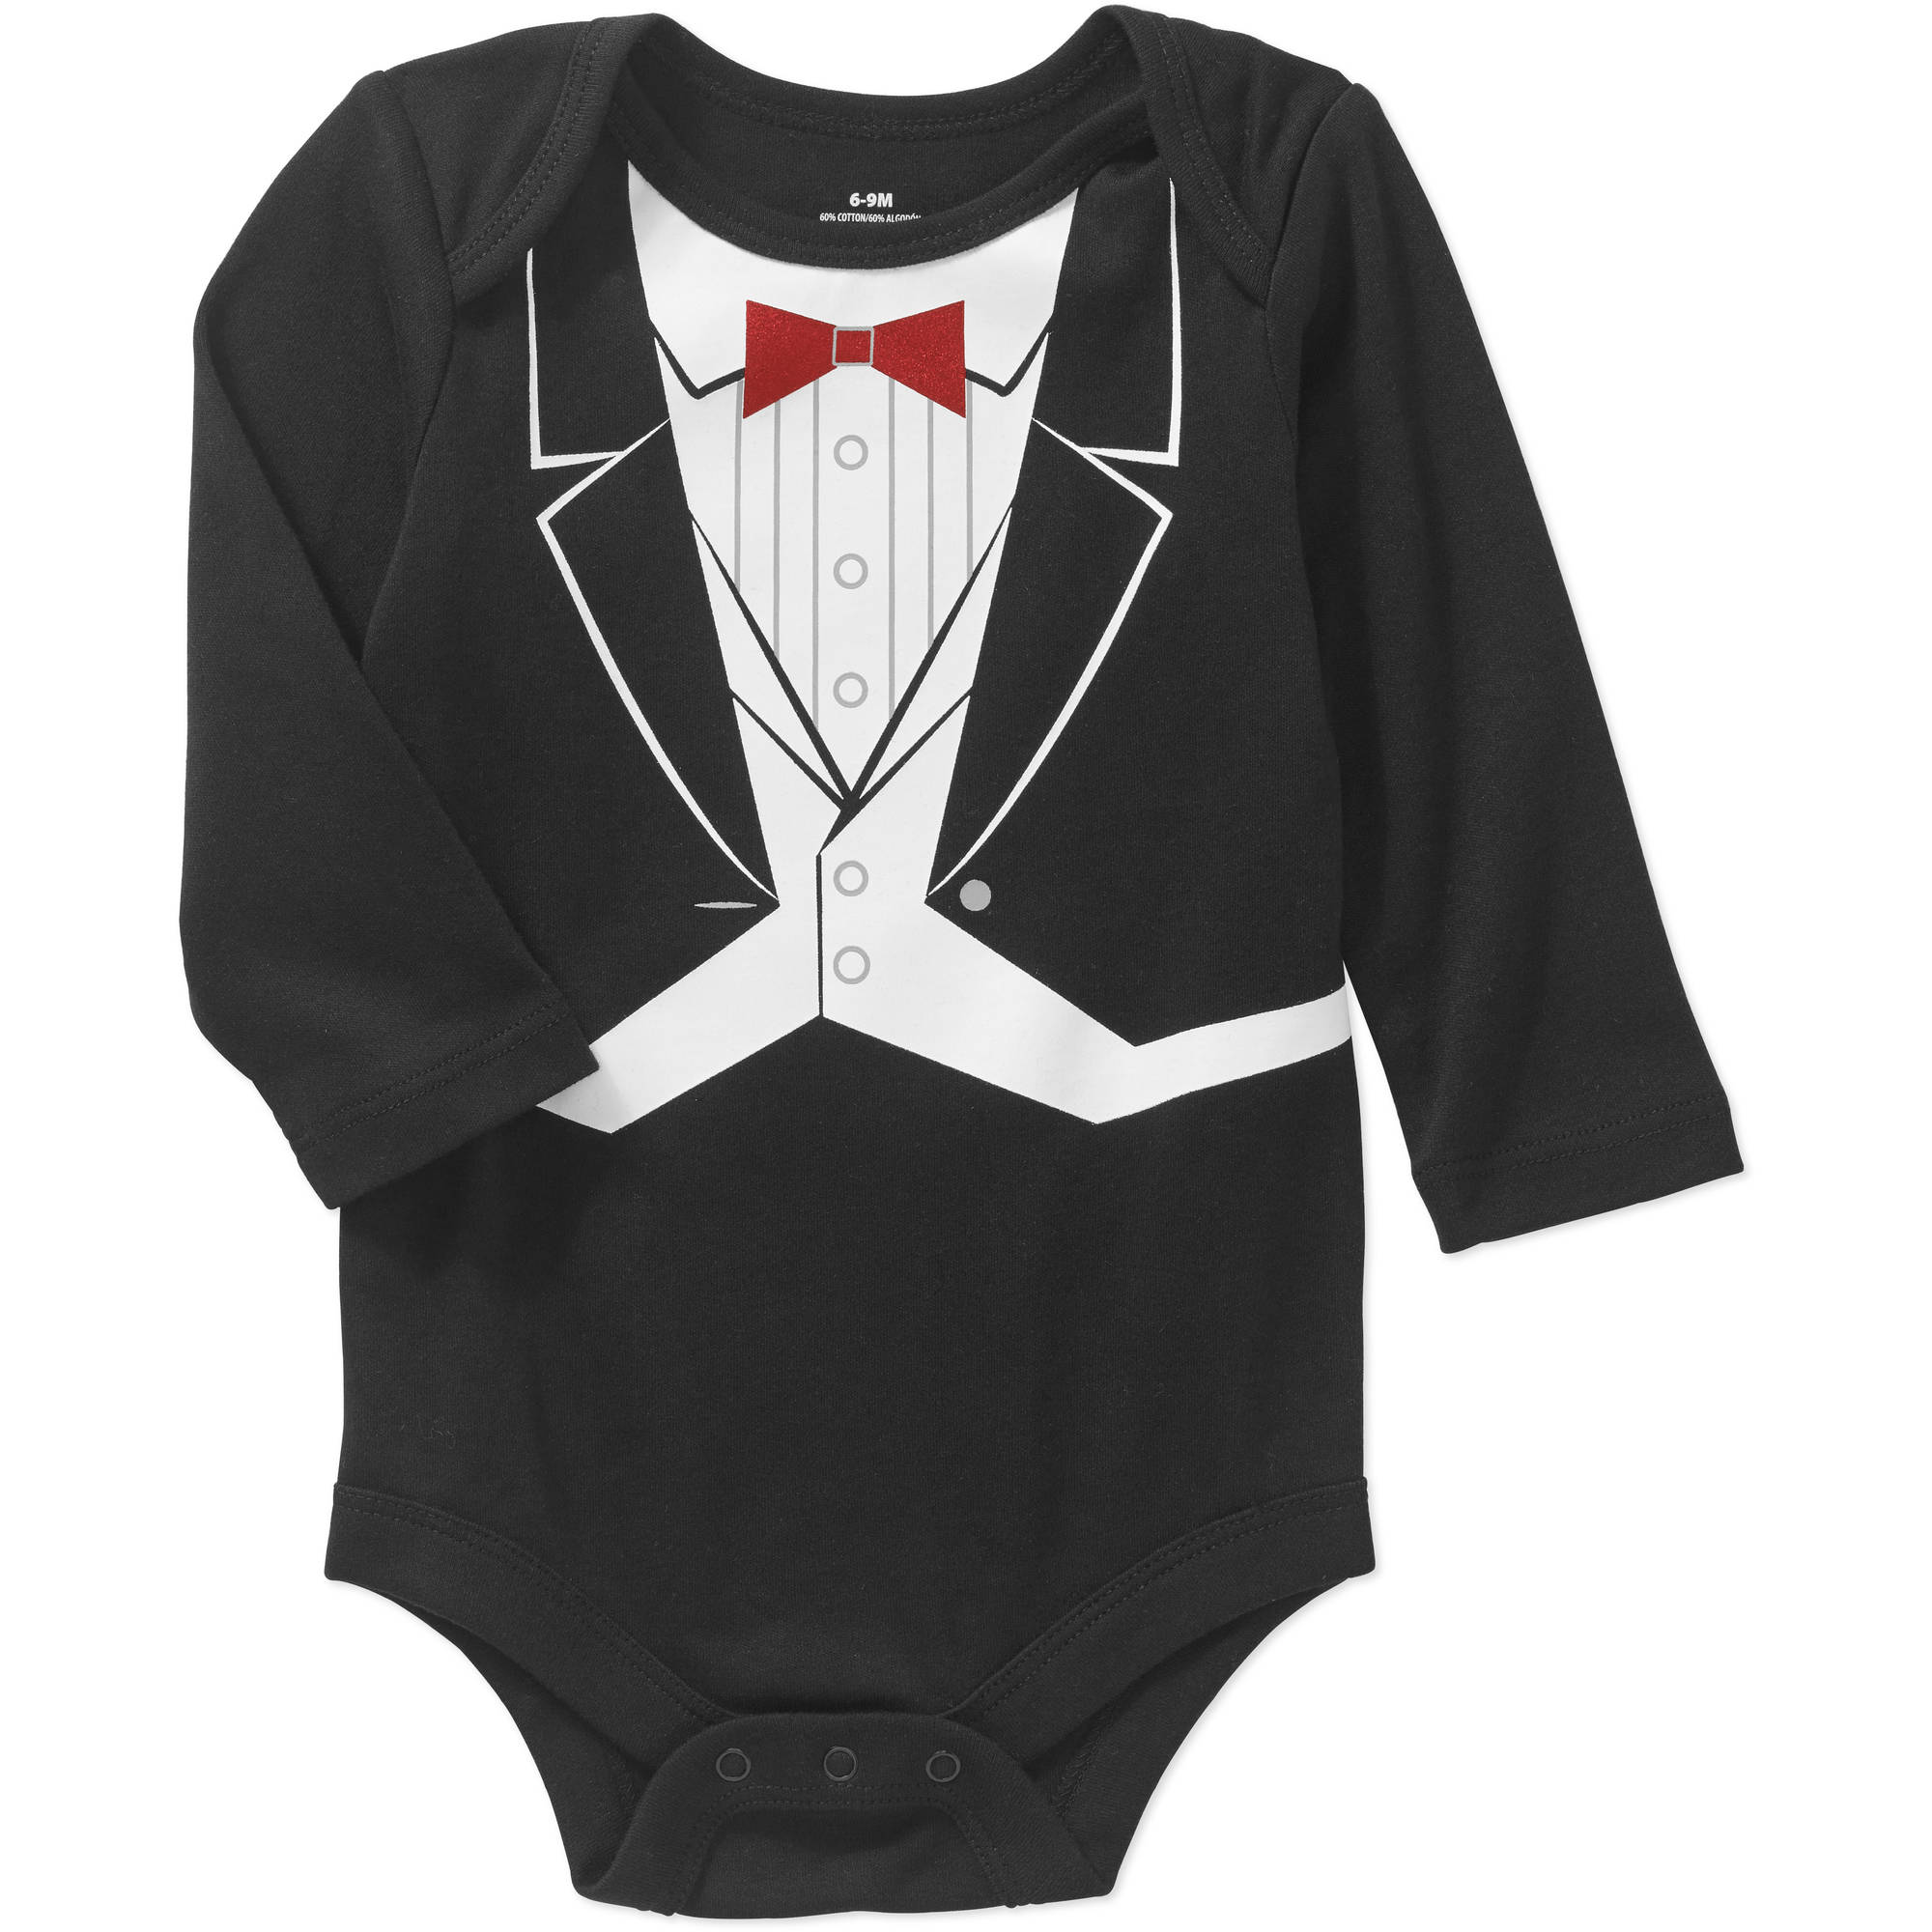 Newborn Baby Boys' Tuxedo Bodysuit - image 1 of 1